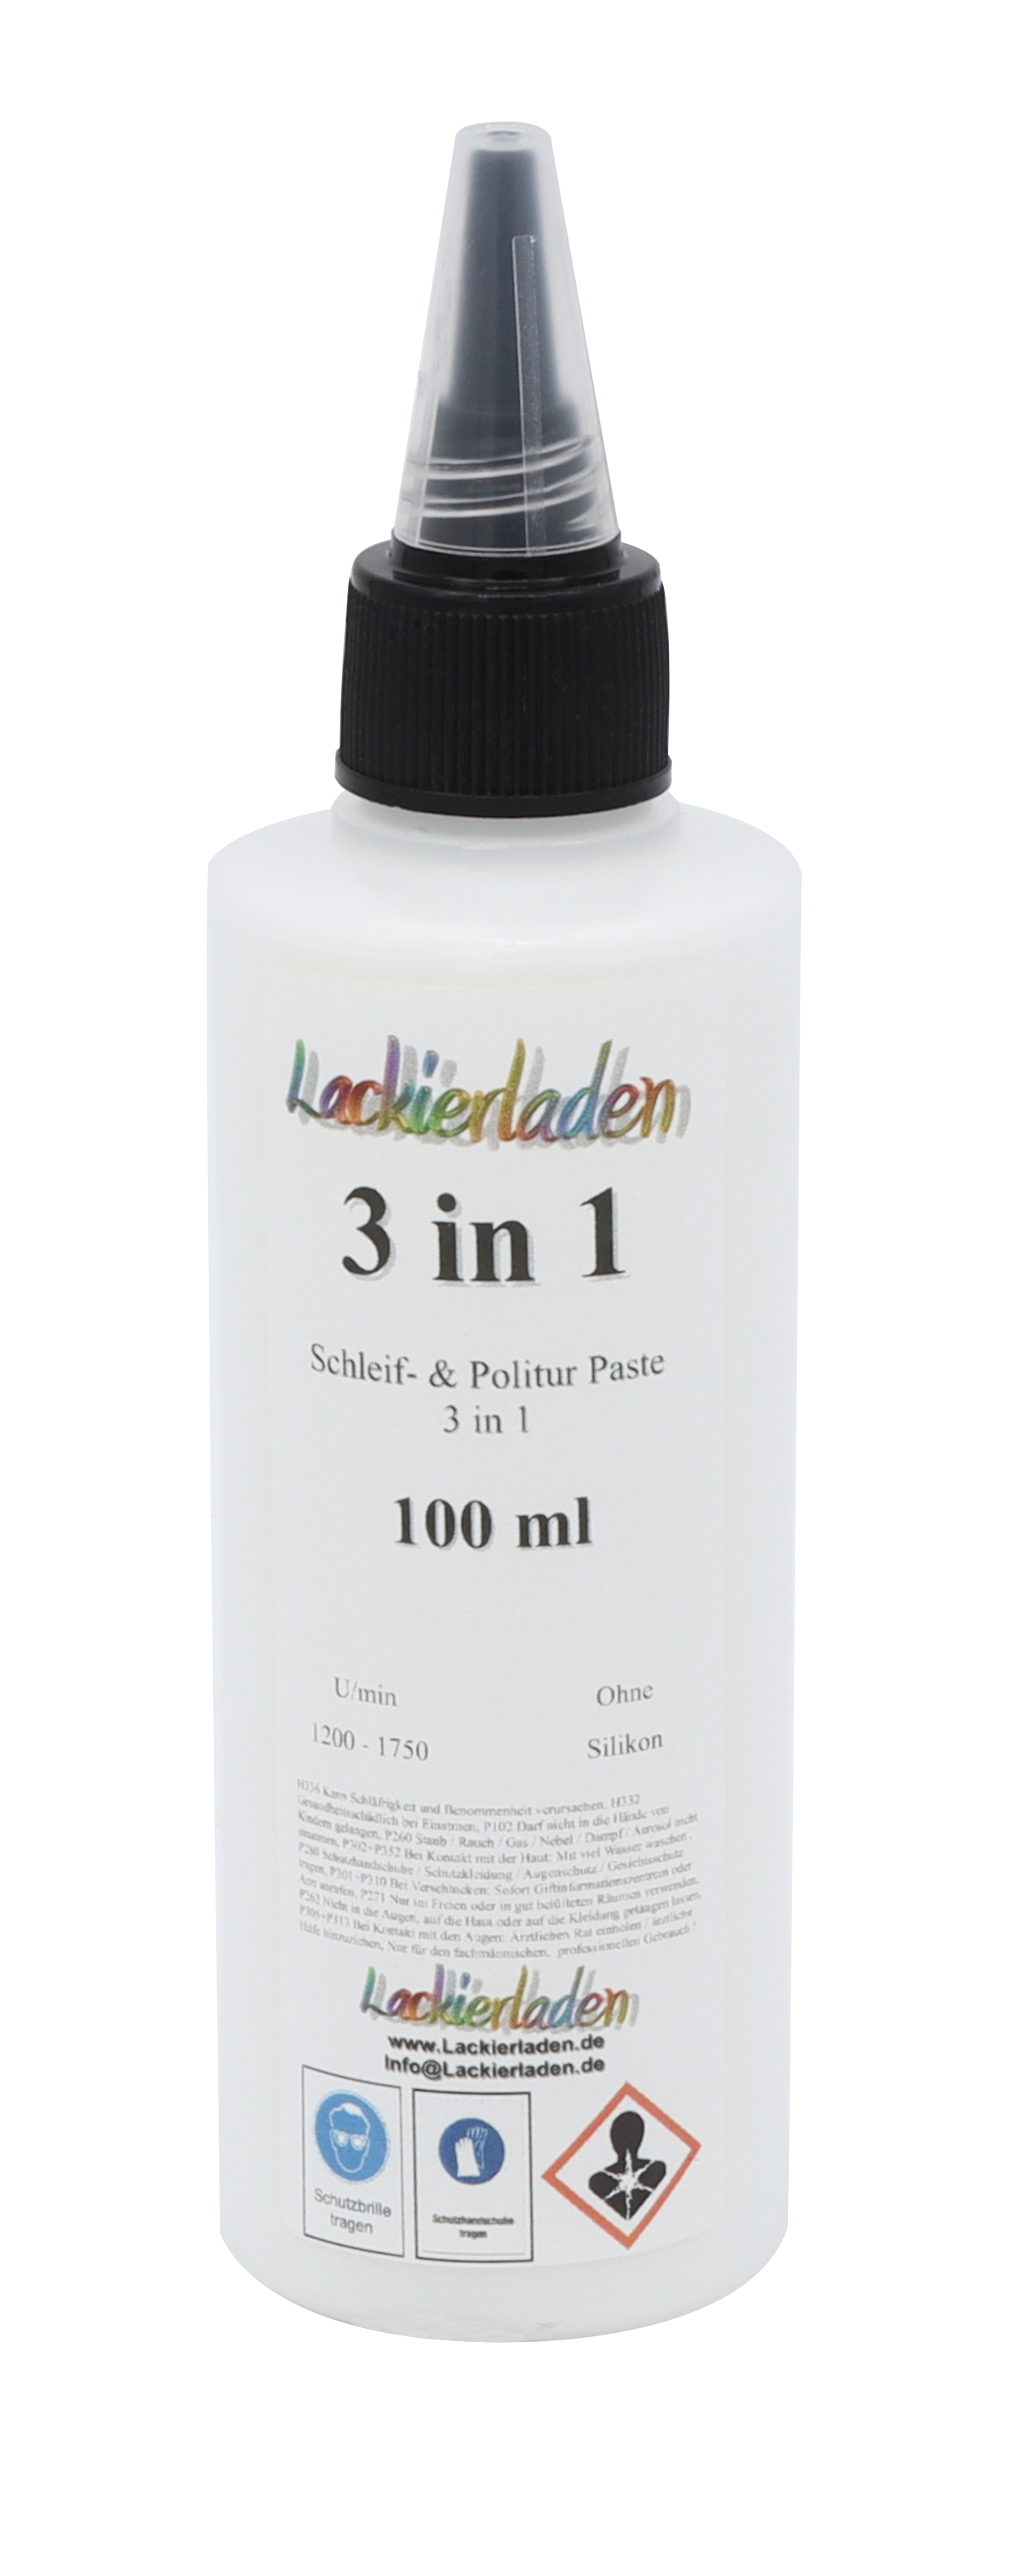 Poli 3 in 1 Schleif- & Politur Paste 100 ml | Polierpaste Schleifpaste polieren